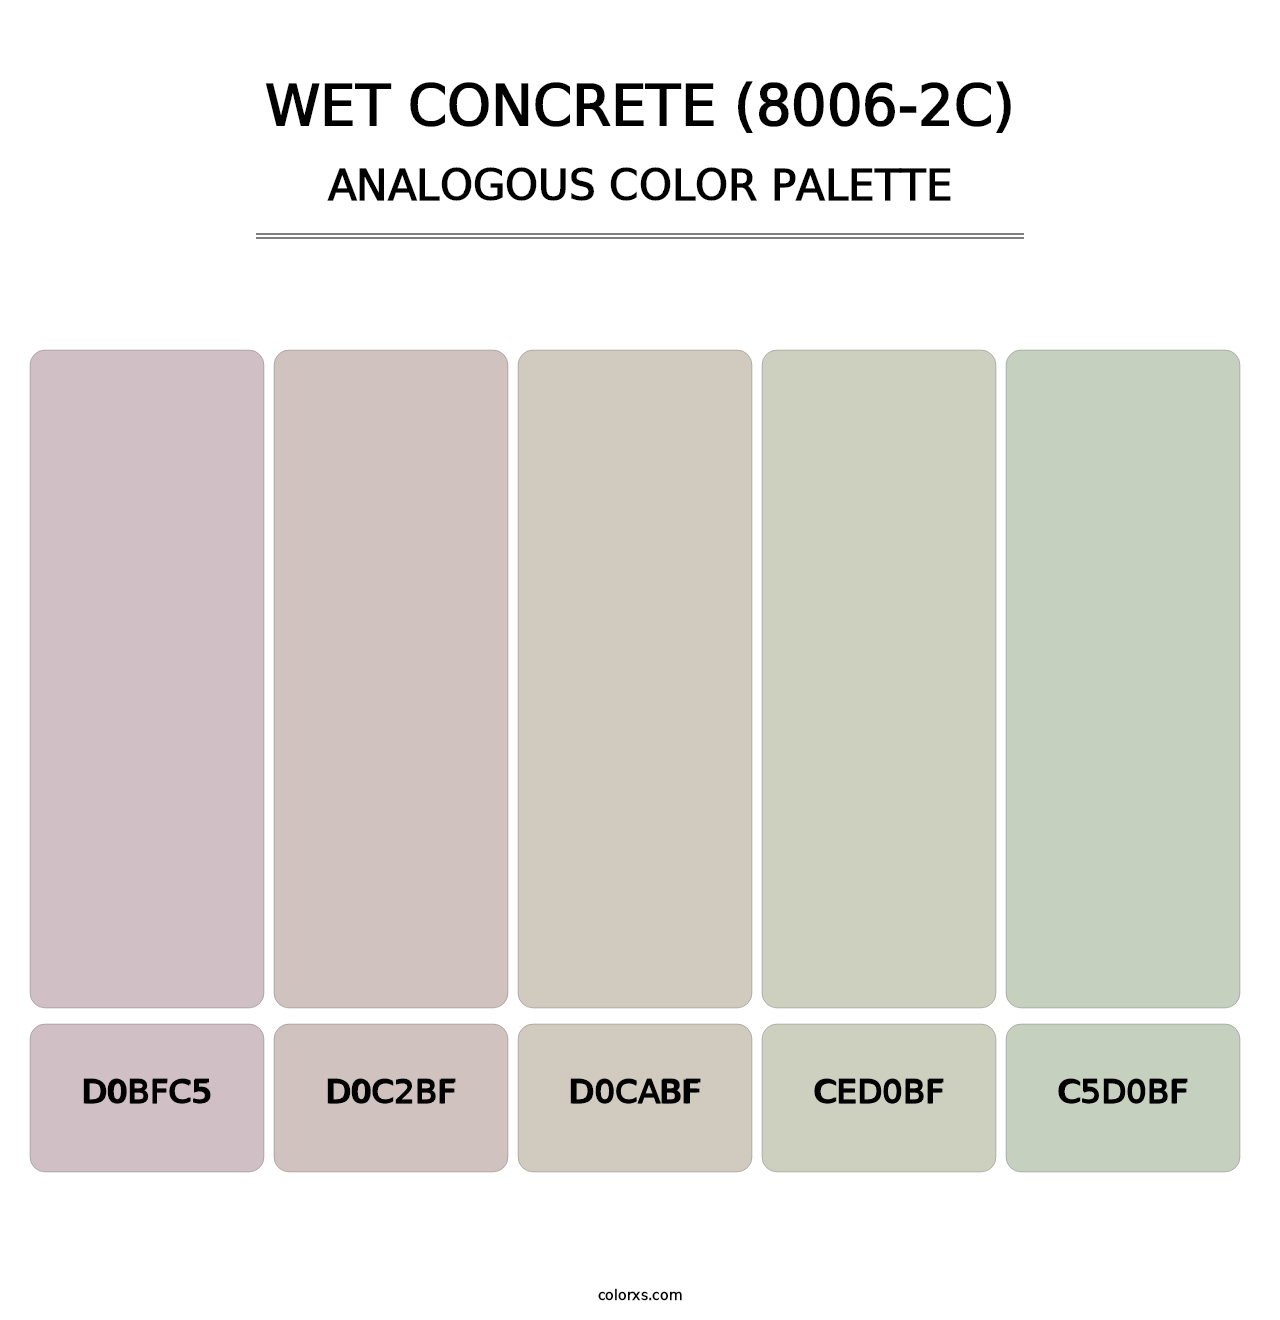 Wet Concrete (8006-2C) - Analogous Color Palette